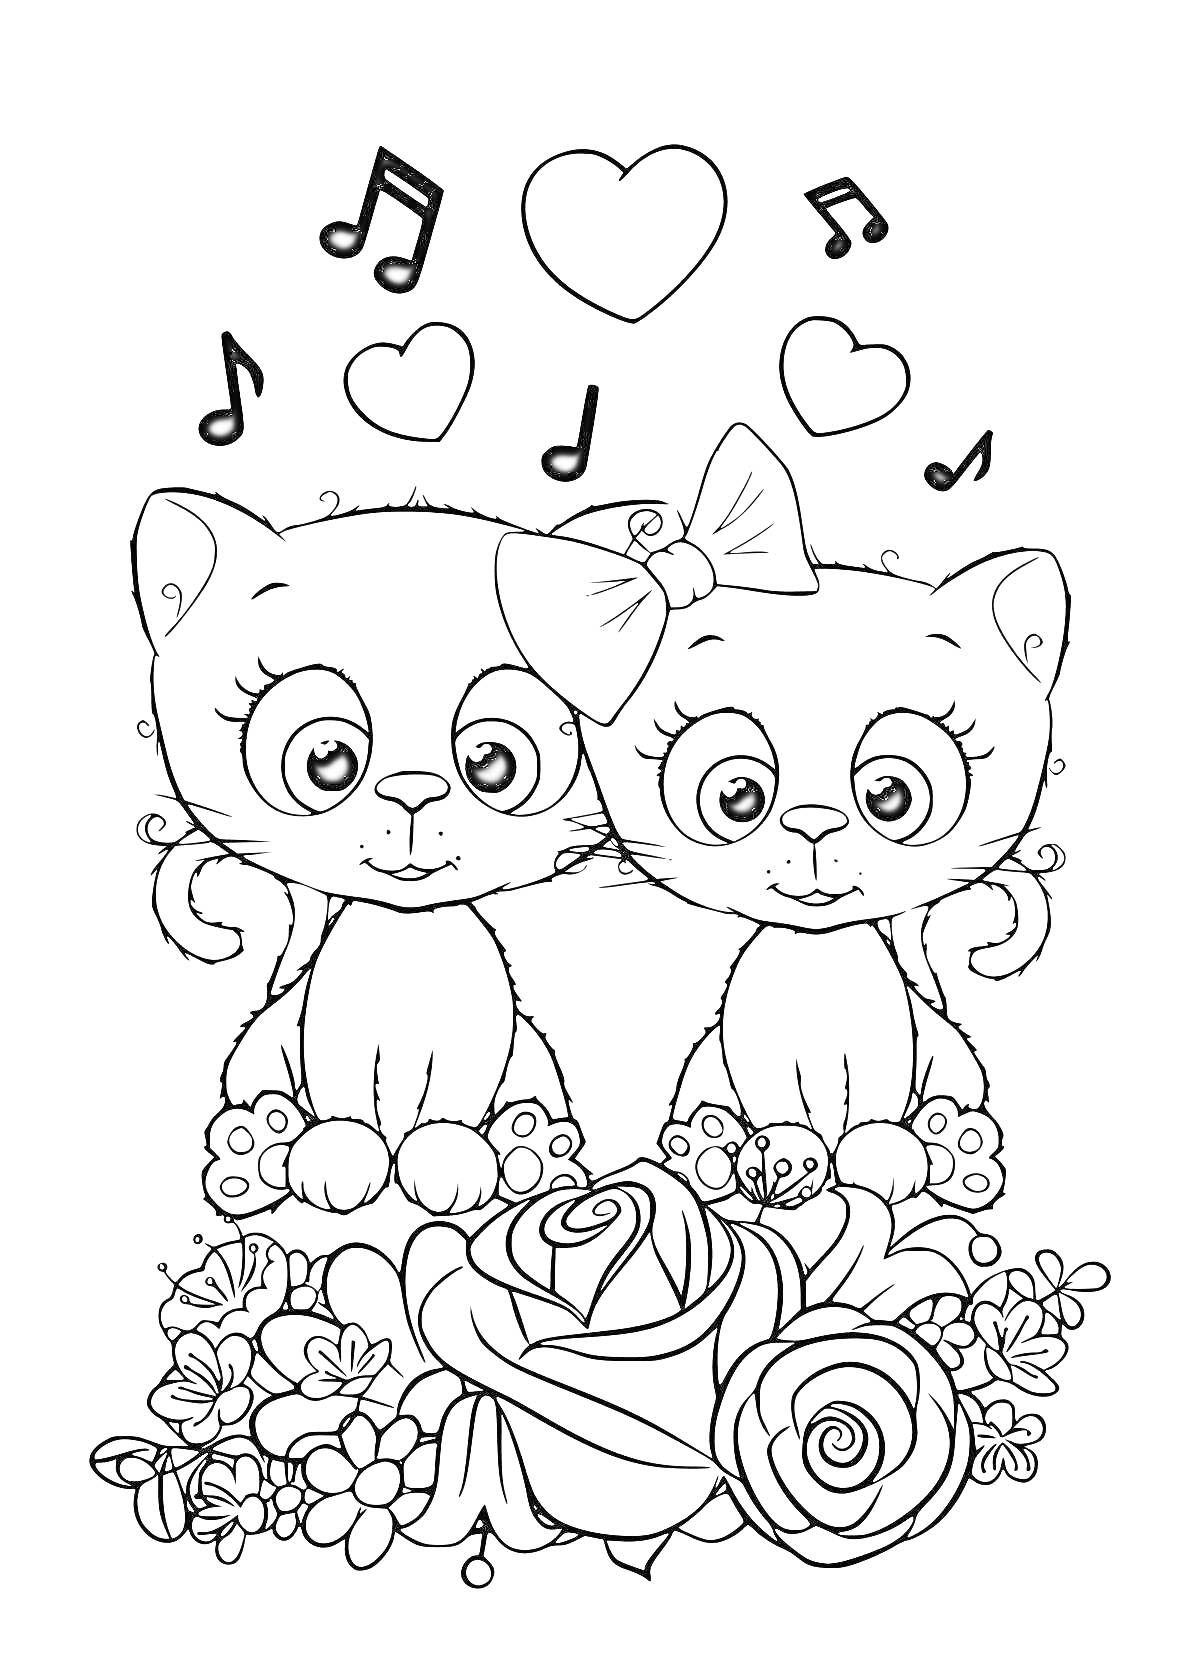 Раскраска Два котенка с бантиком и цветами, музыкальные ноты и сердечки